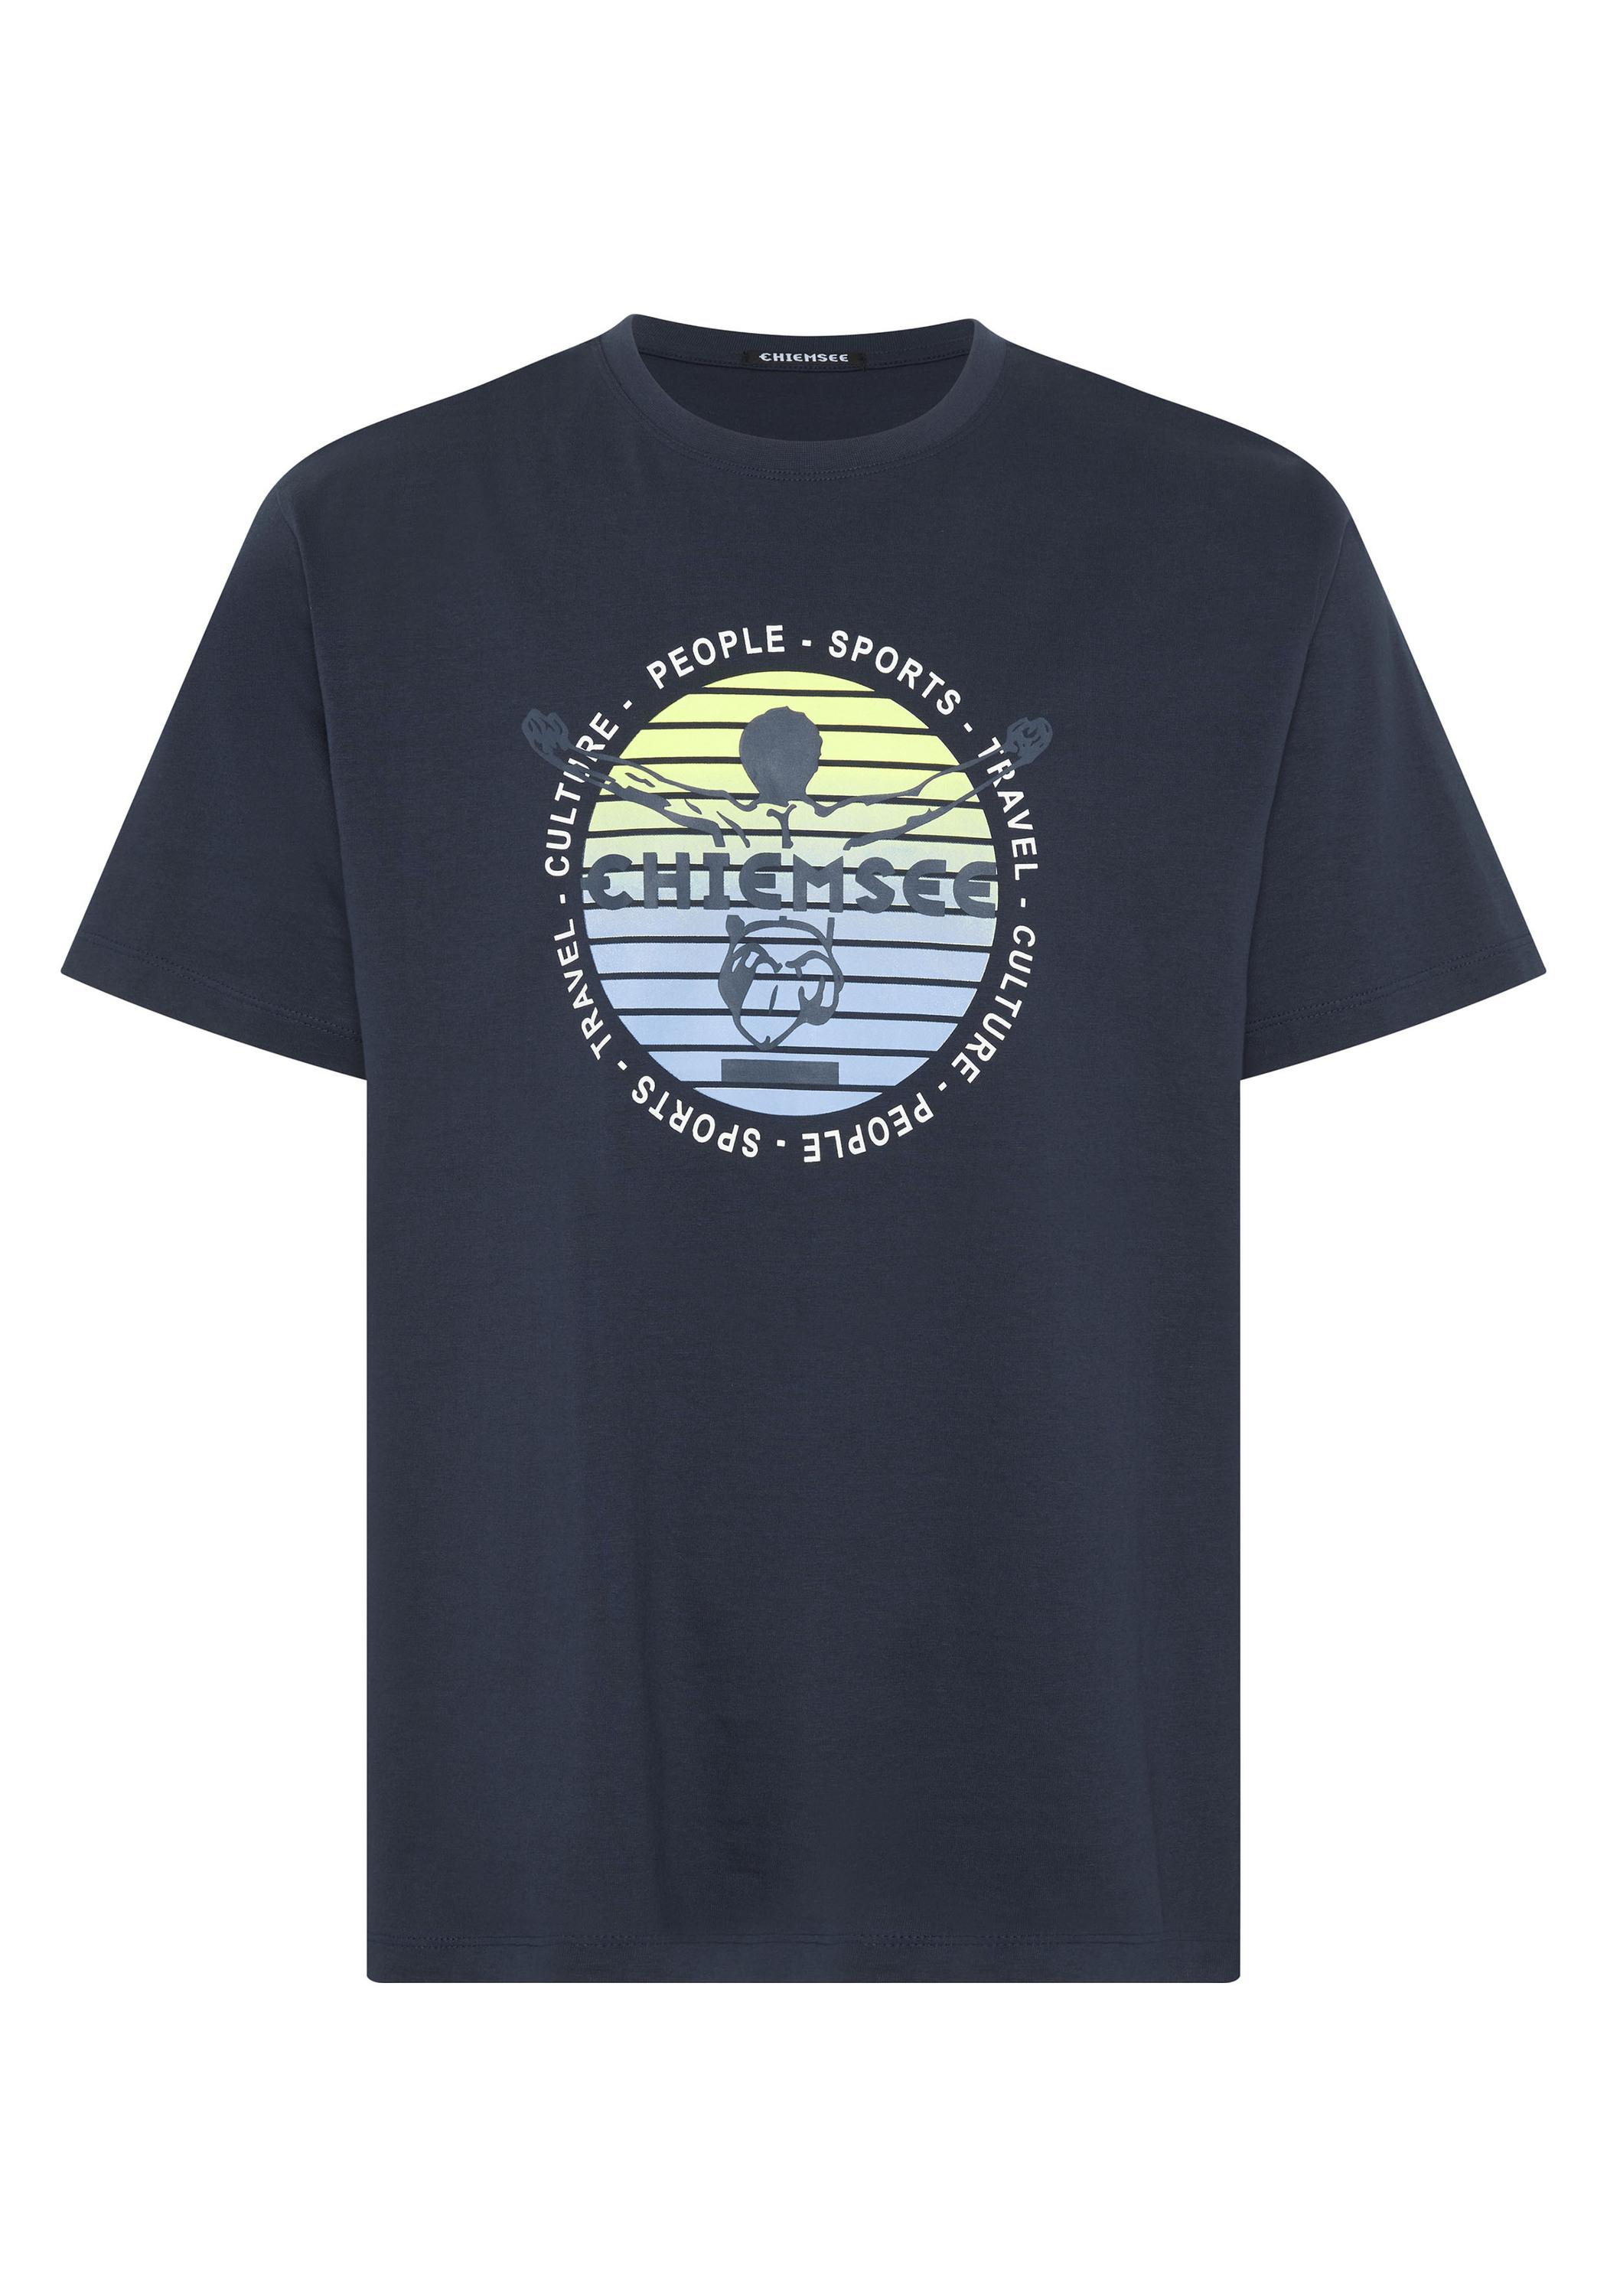 T-Shirt Herren T-Shirt Online Sky kaufen SportScheck Shop 19-3924 Chiemsee im Night von